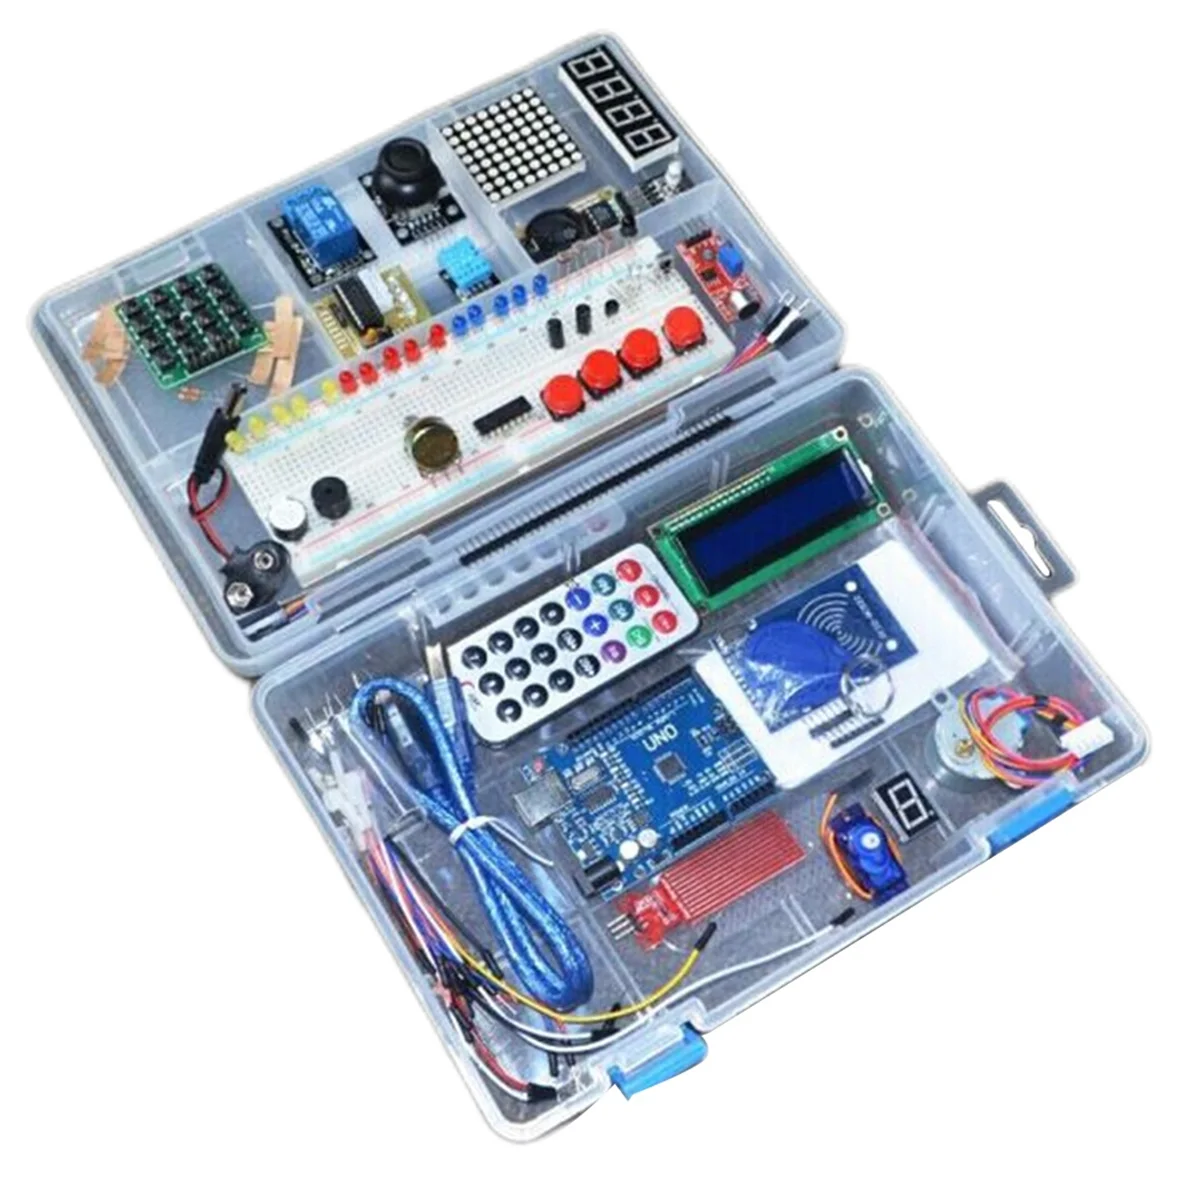 

Набор для изучения радиочастотной идентификации, ЖК-дисплей 1602, обновленная улучшенная версия, стартовый комплект для Arduino UNO R3, программируемый робот с открытым исходным кодом, Набор для творчества